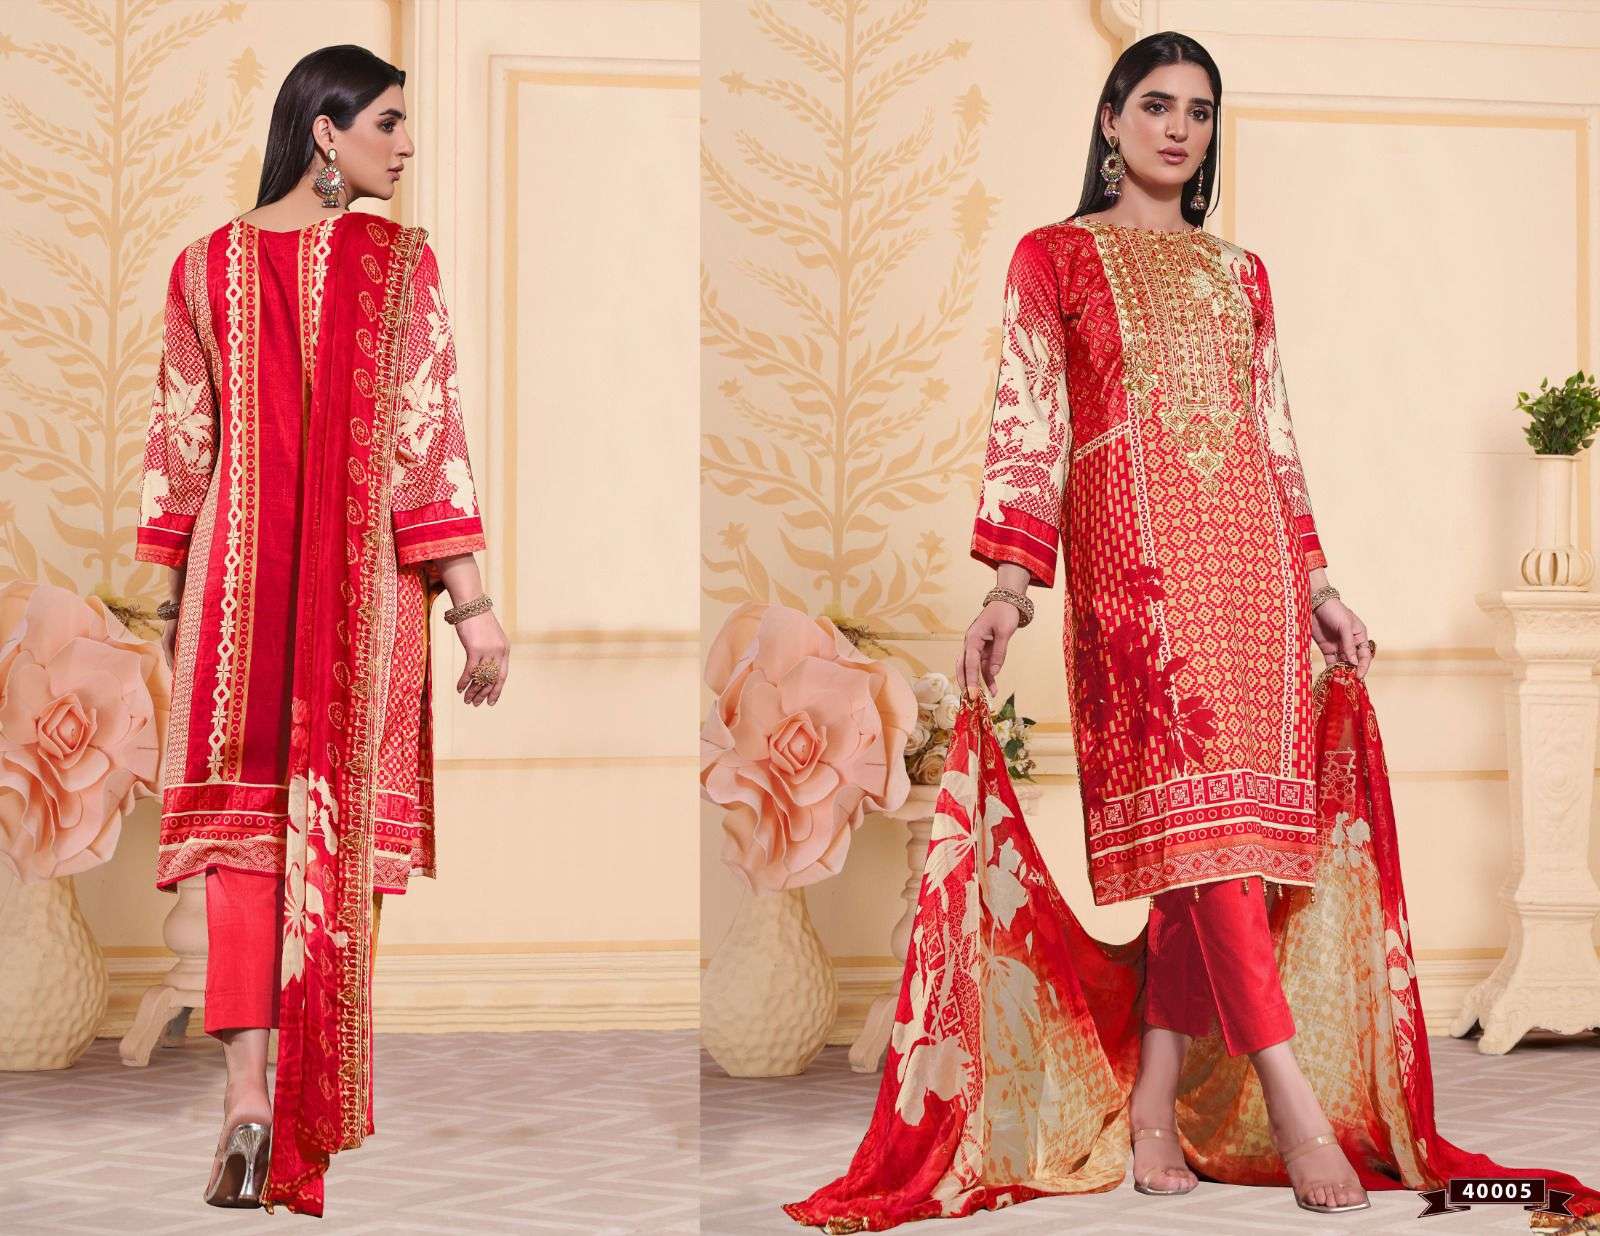 apana cotton razia sultan vol-40 salwar kameez dress material catalogue wholesaler surat